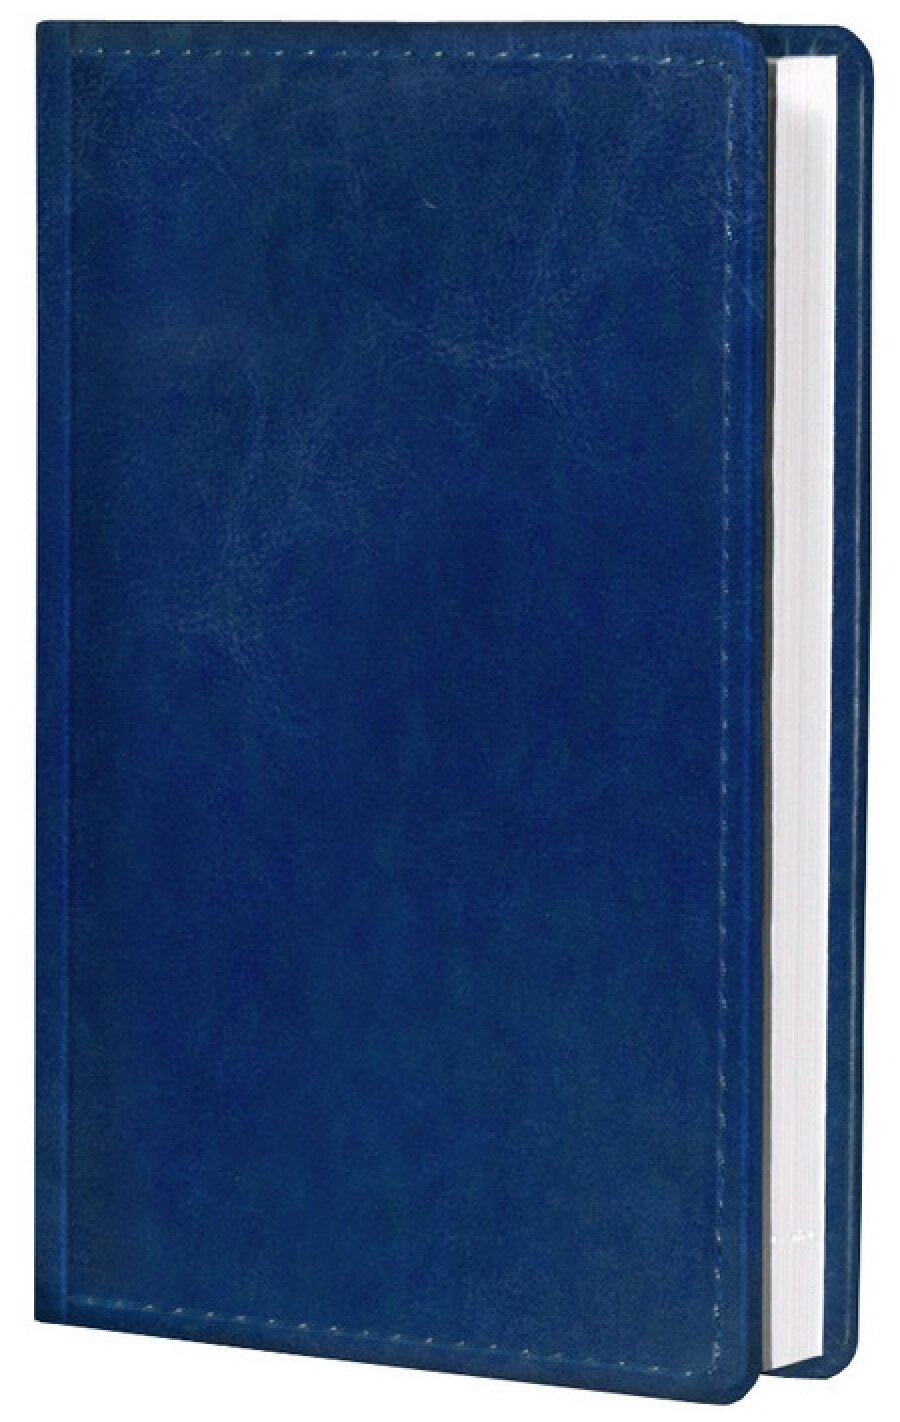 Ежедневник недатированный А6 Attache Agenda (160 листов) обложка кожзам, синий